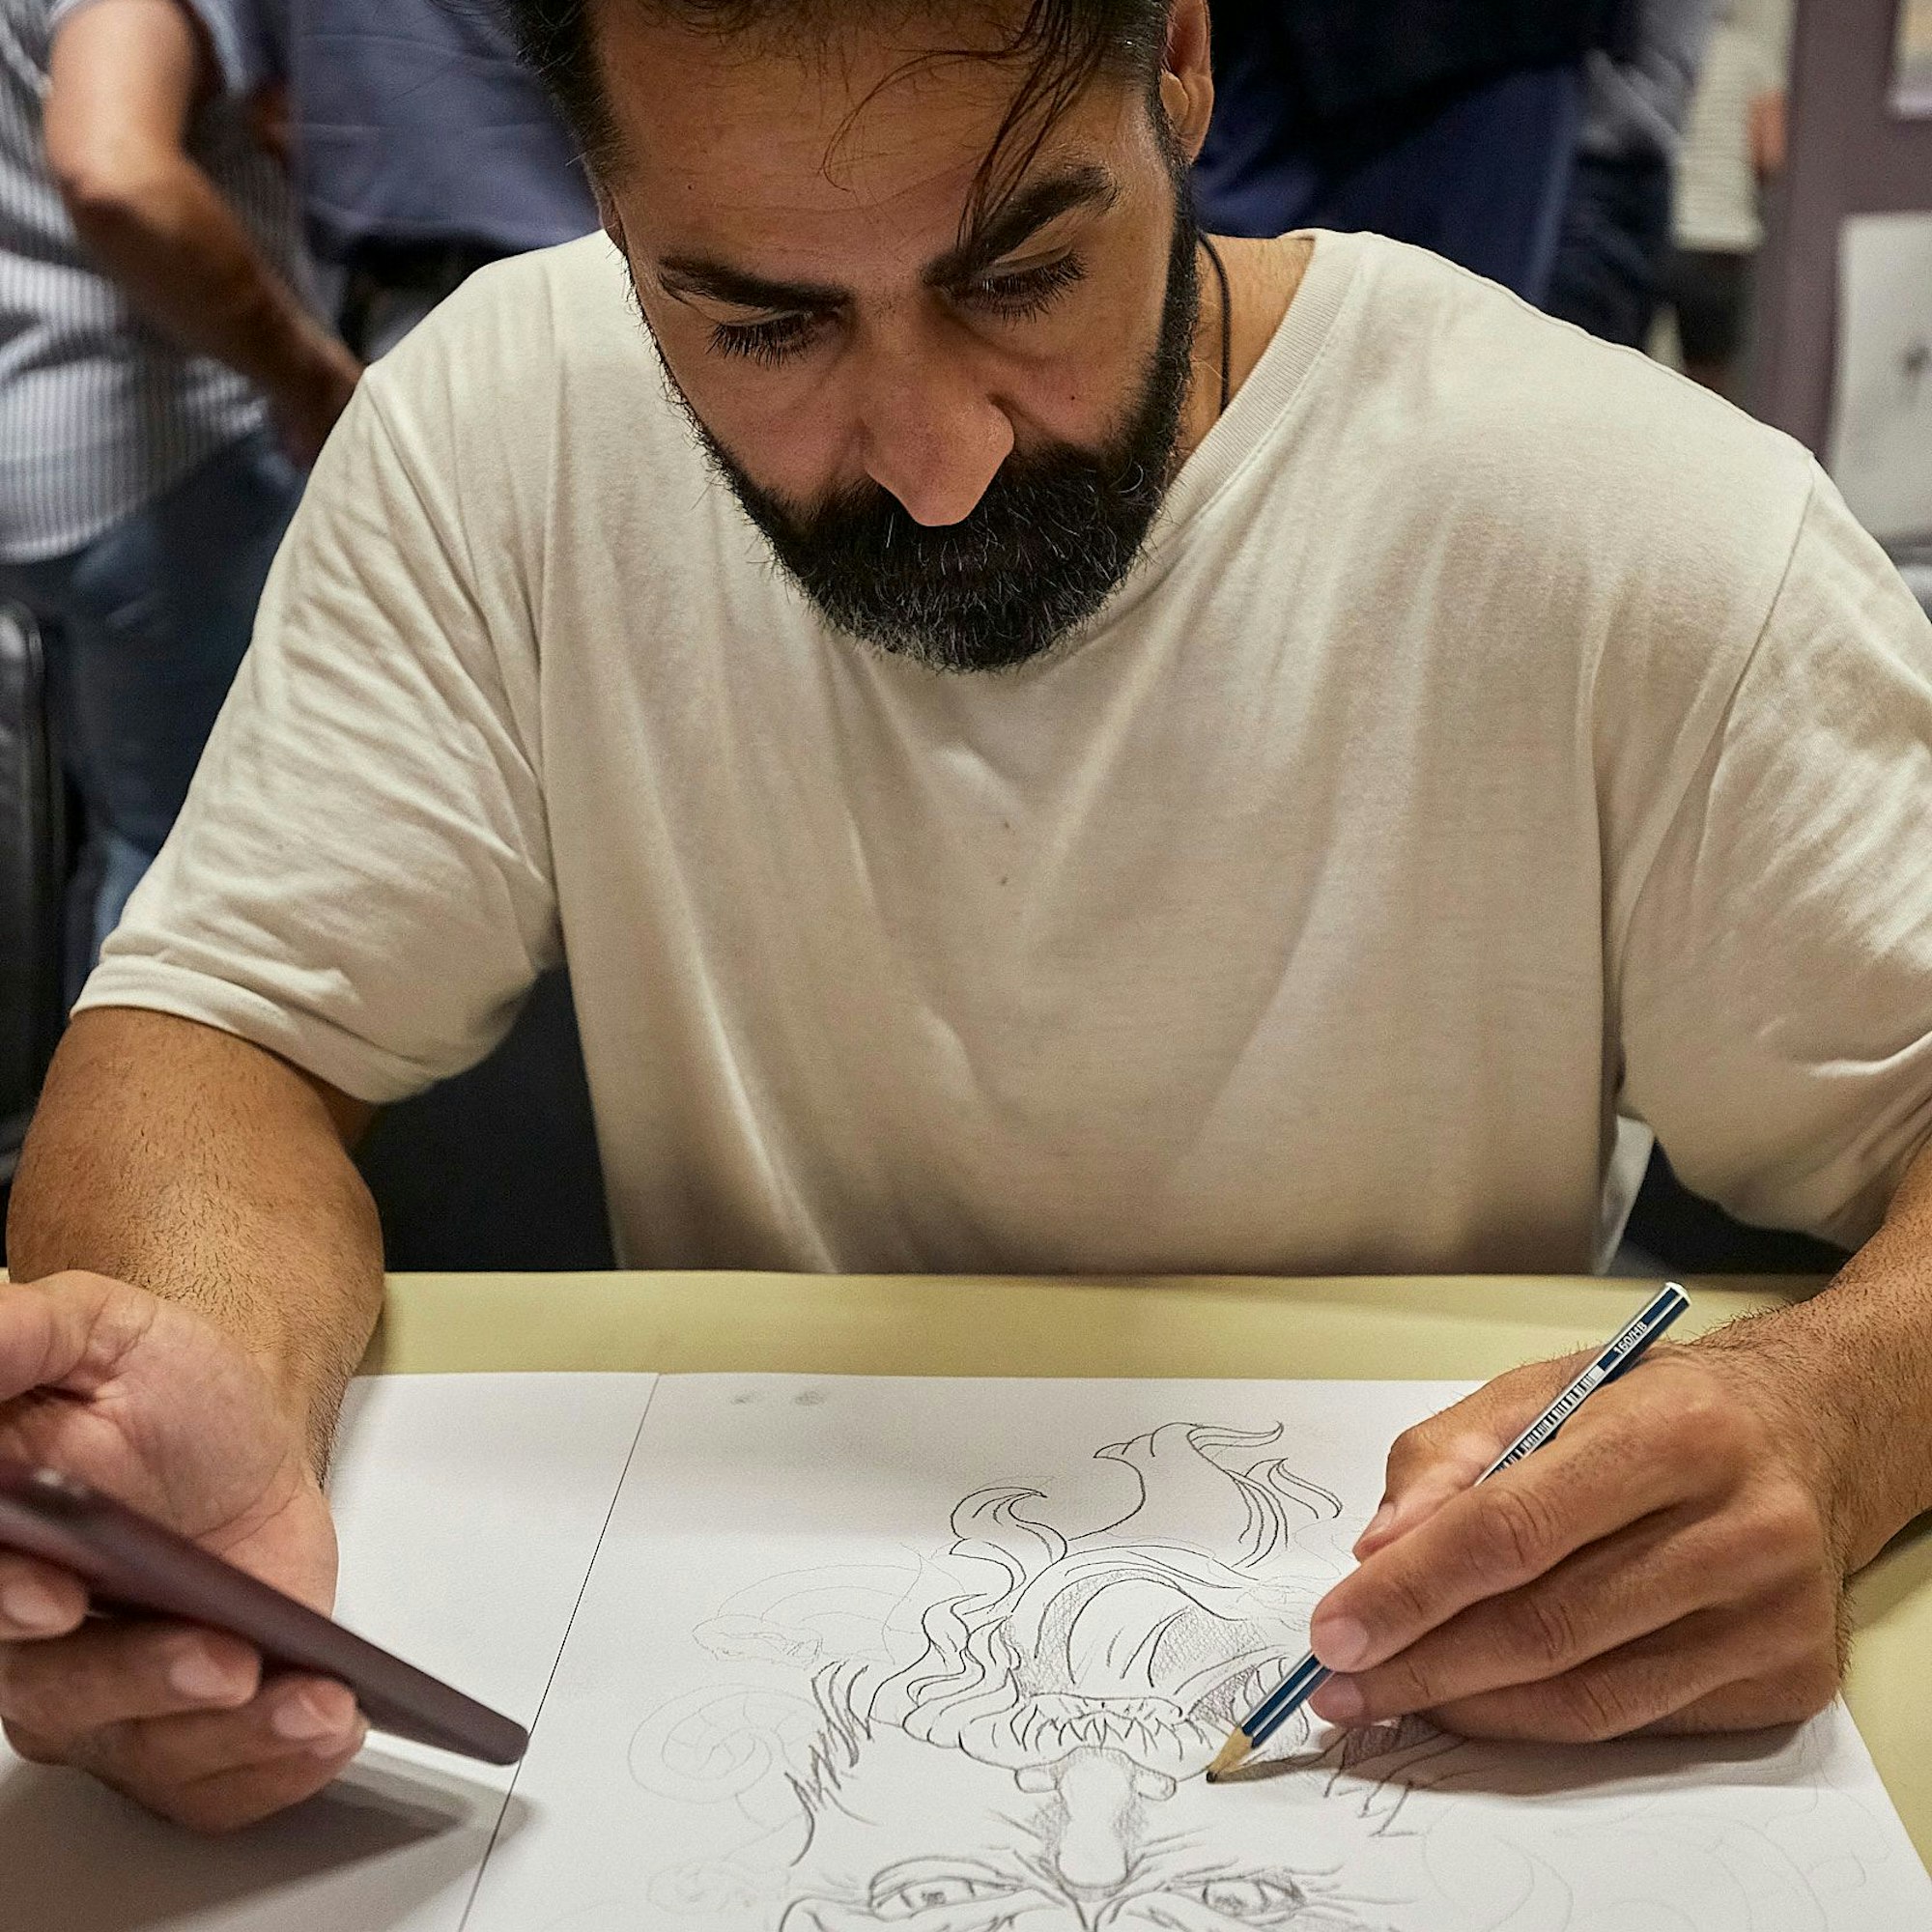 Der Iraner Obadi zeichnet mit einem Bleistift ein Bild. In der anderen Hand hält er ein Smartphone.